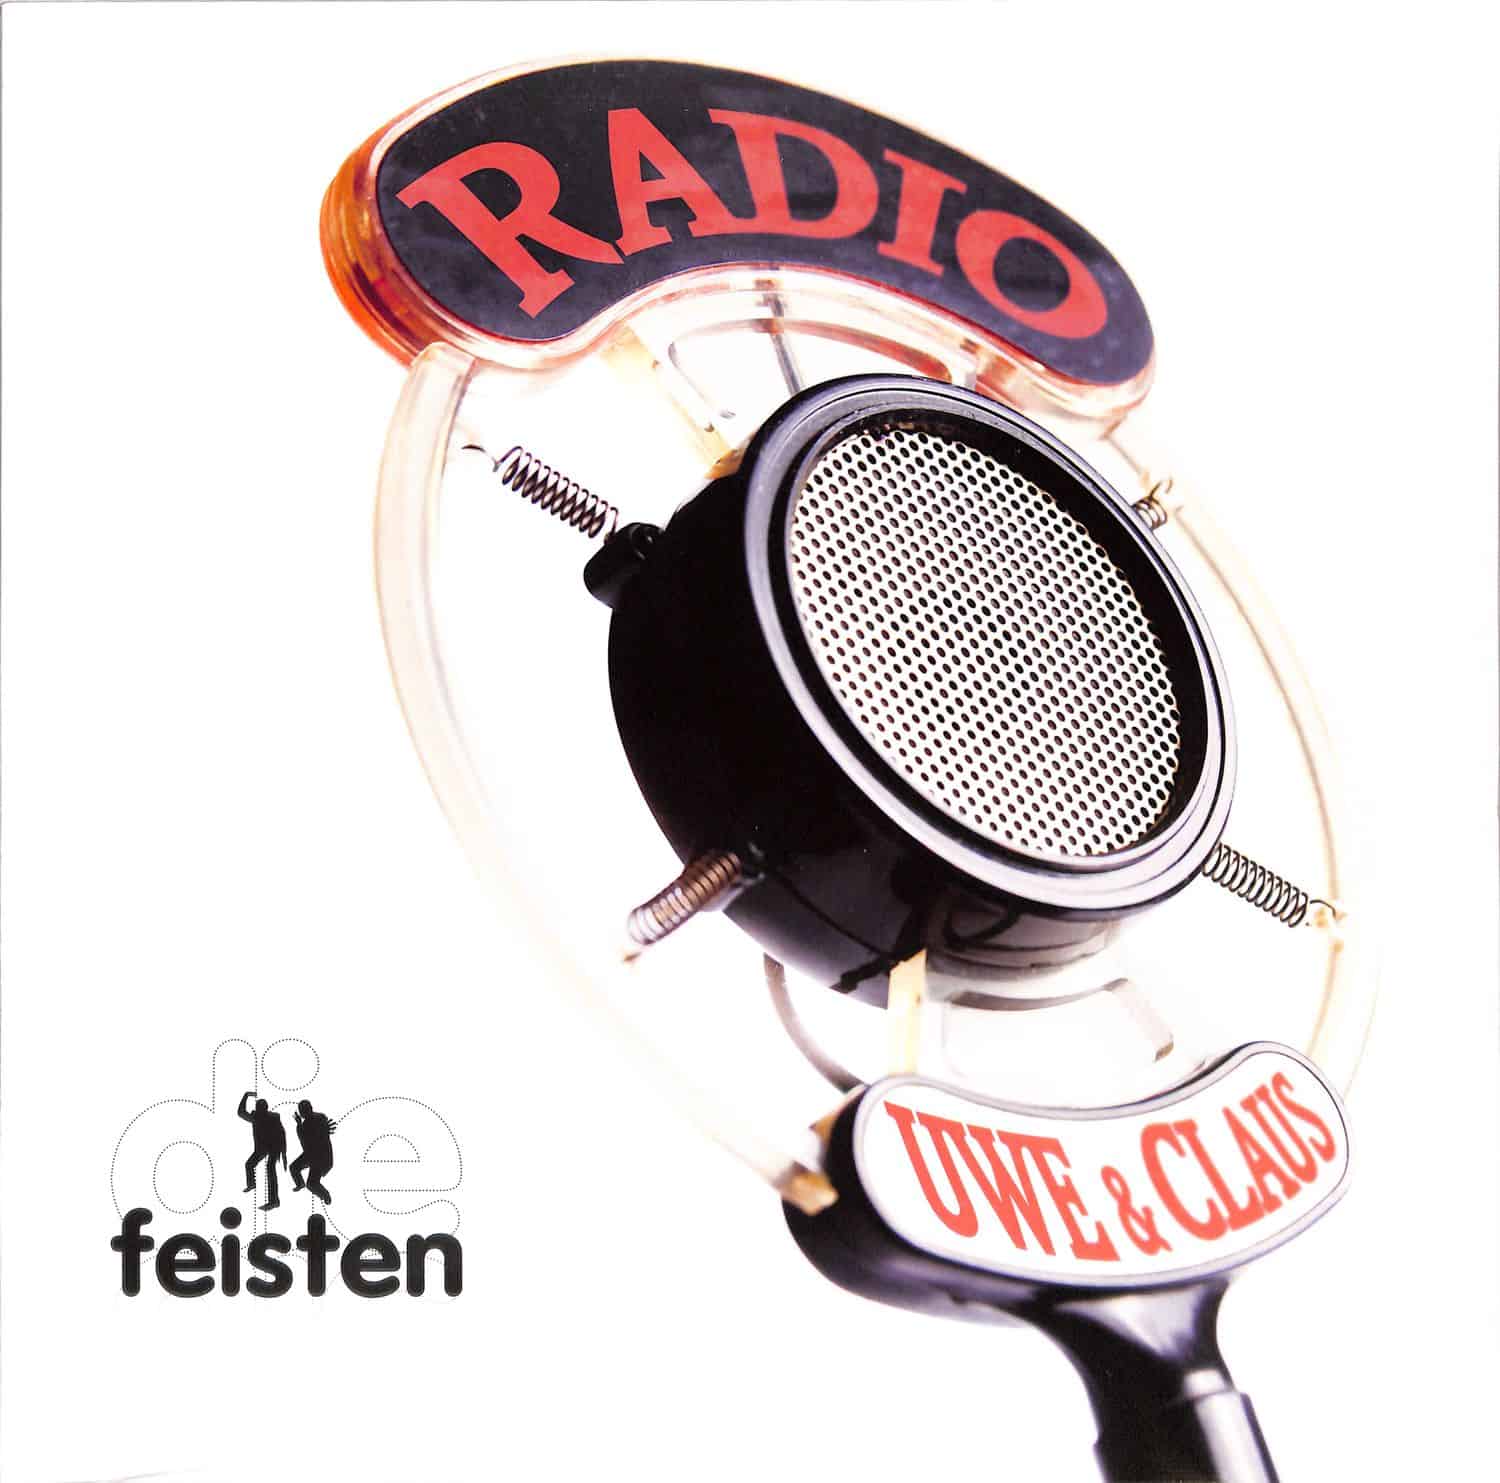 Die Feisten - RADIO UWE & CLAUS 